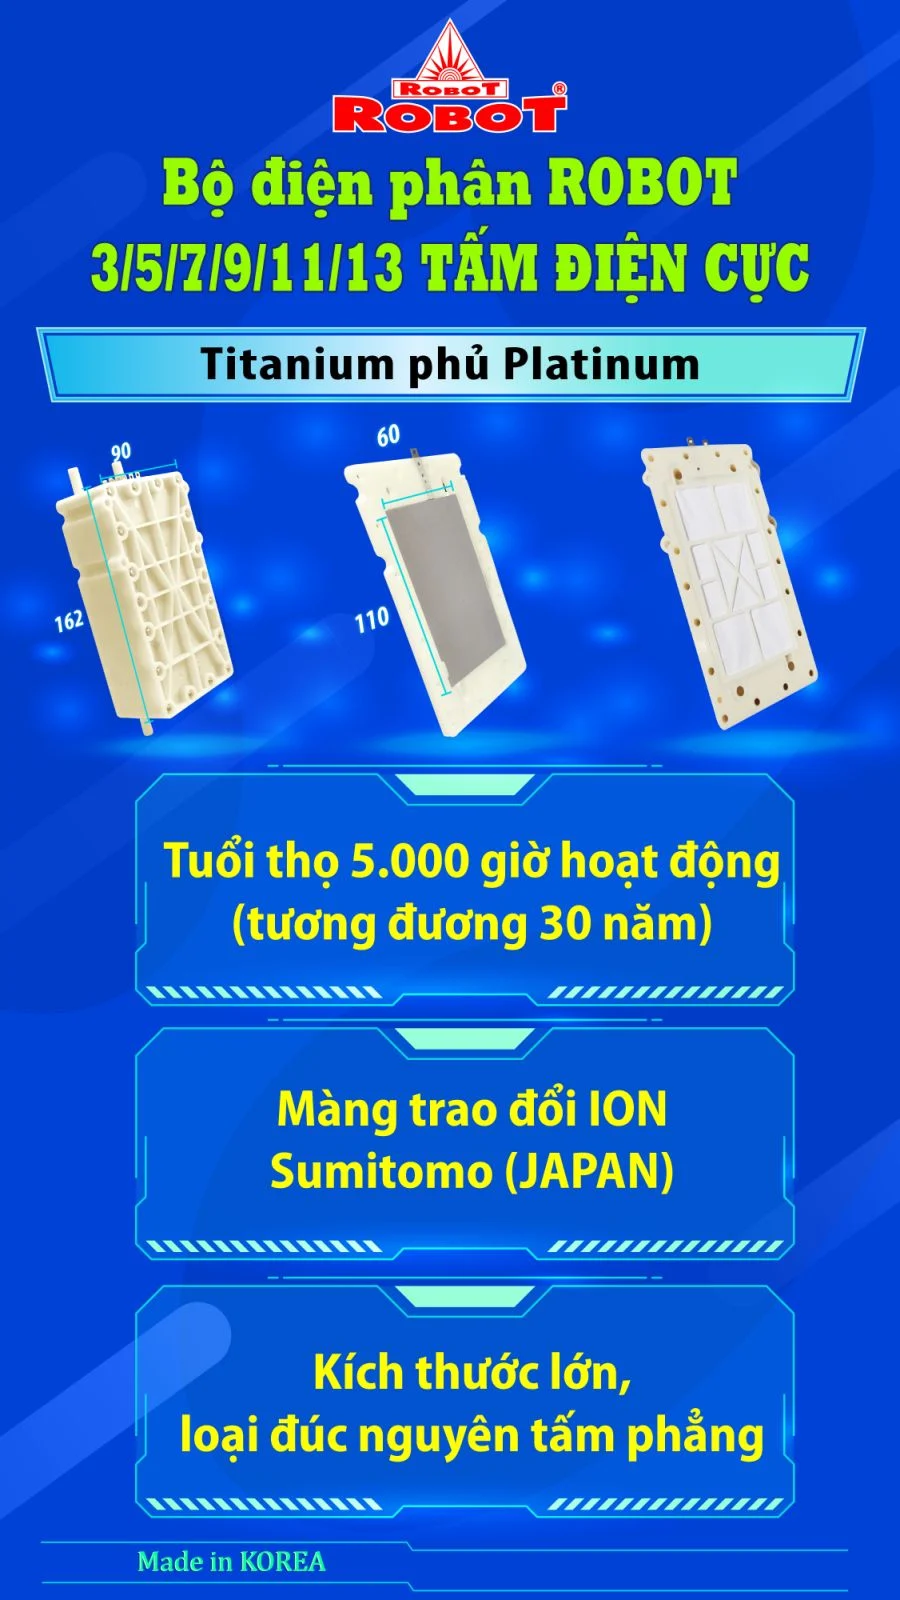 Bộ điện phân đến 3 tấm điện cực Titanium phủ Platinum của IONKING 912